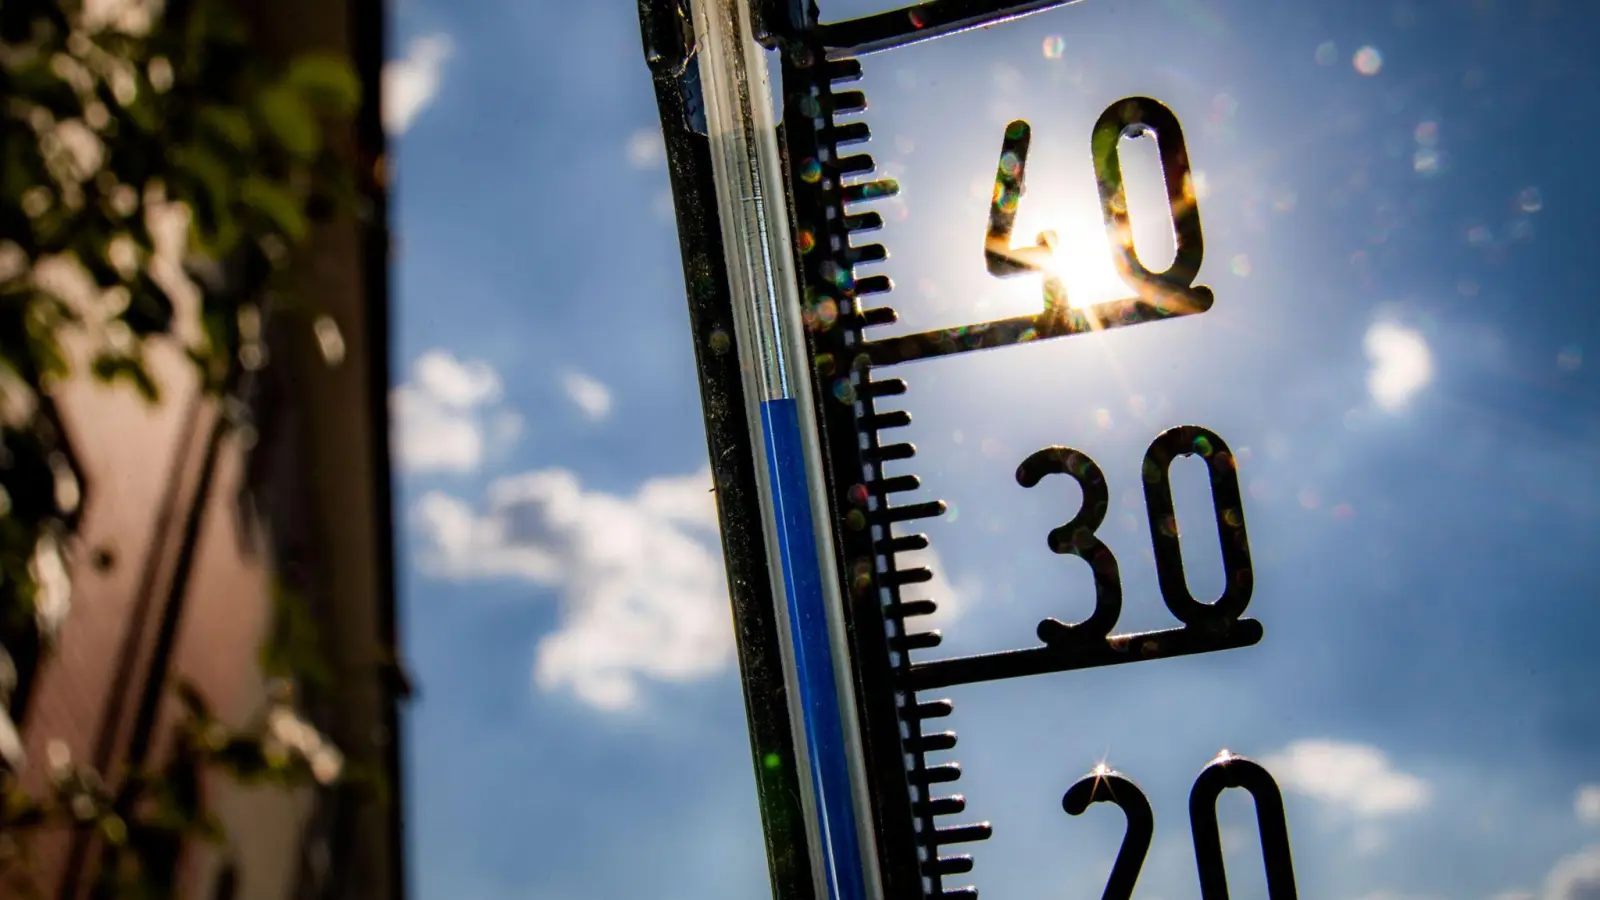 Hohe Sommertemperaturen haben einer Studie zufolge in den Jahren 2018 bis 2020 jeweils zu Tausenden hitzebedingter Sterbefälle in Deutschland geführt. (Foto: Frank Rumpenhorst/dpa)